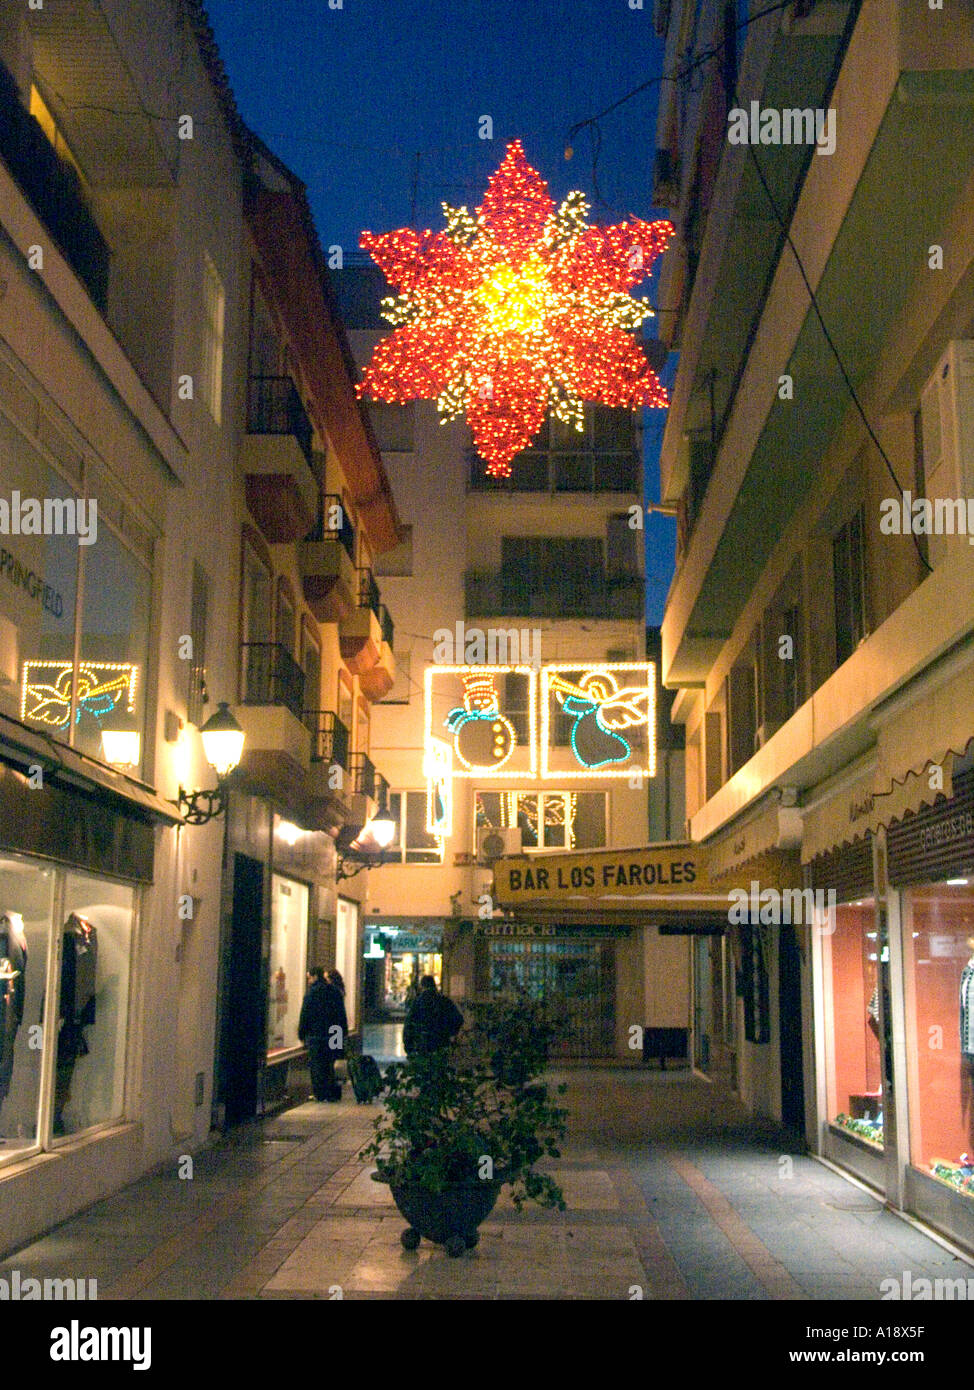 Weihnachtsbeleuchtung in eine Seite zu verbünden, Fuengirola, Costa Del Sol, Andalusien, Spanien, Europa, Weihnachtsbeleuchtung pro Seite ally Fuengirola Stockfoto